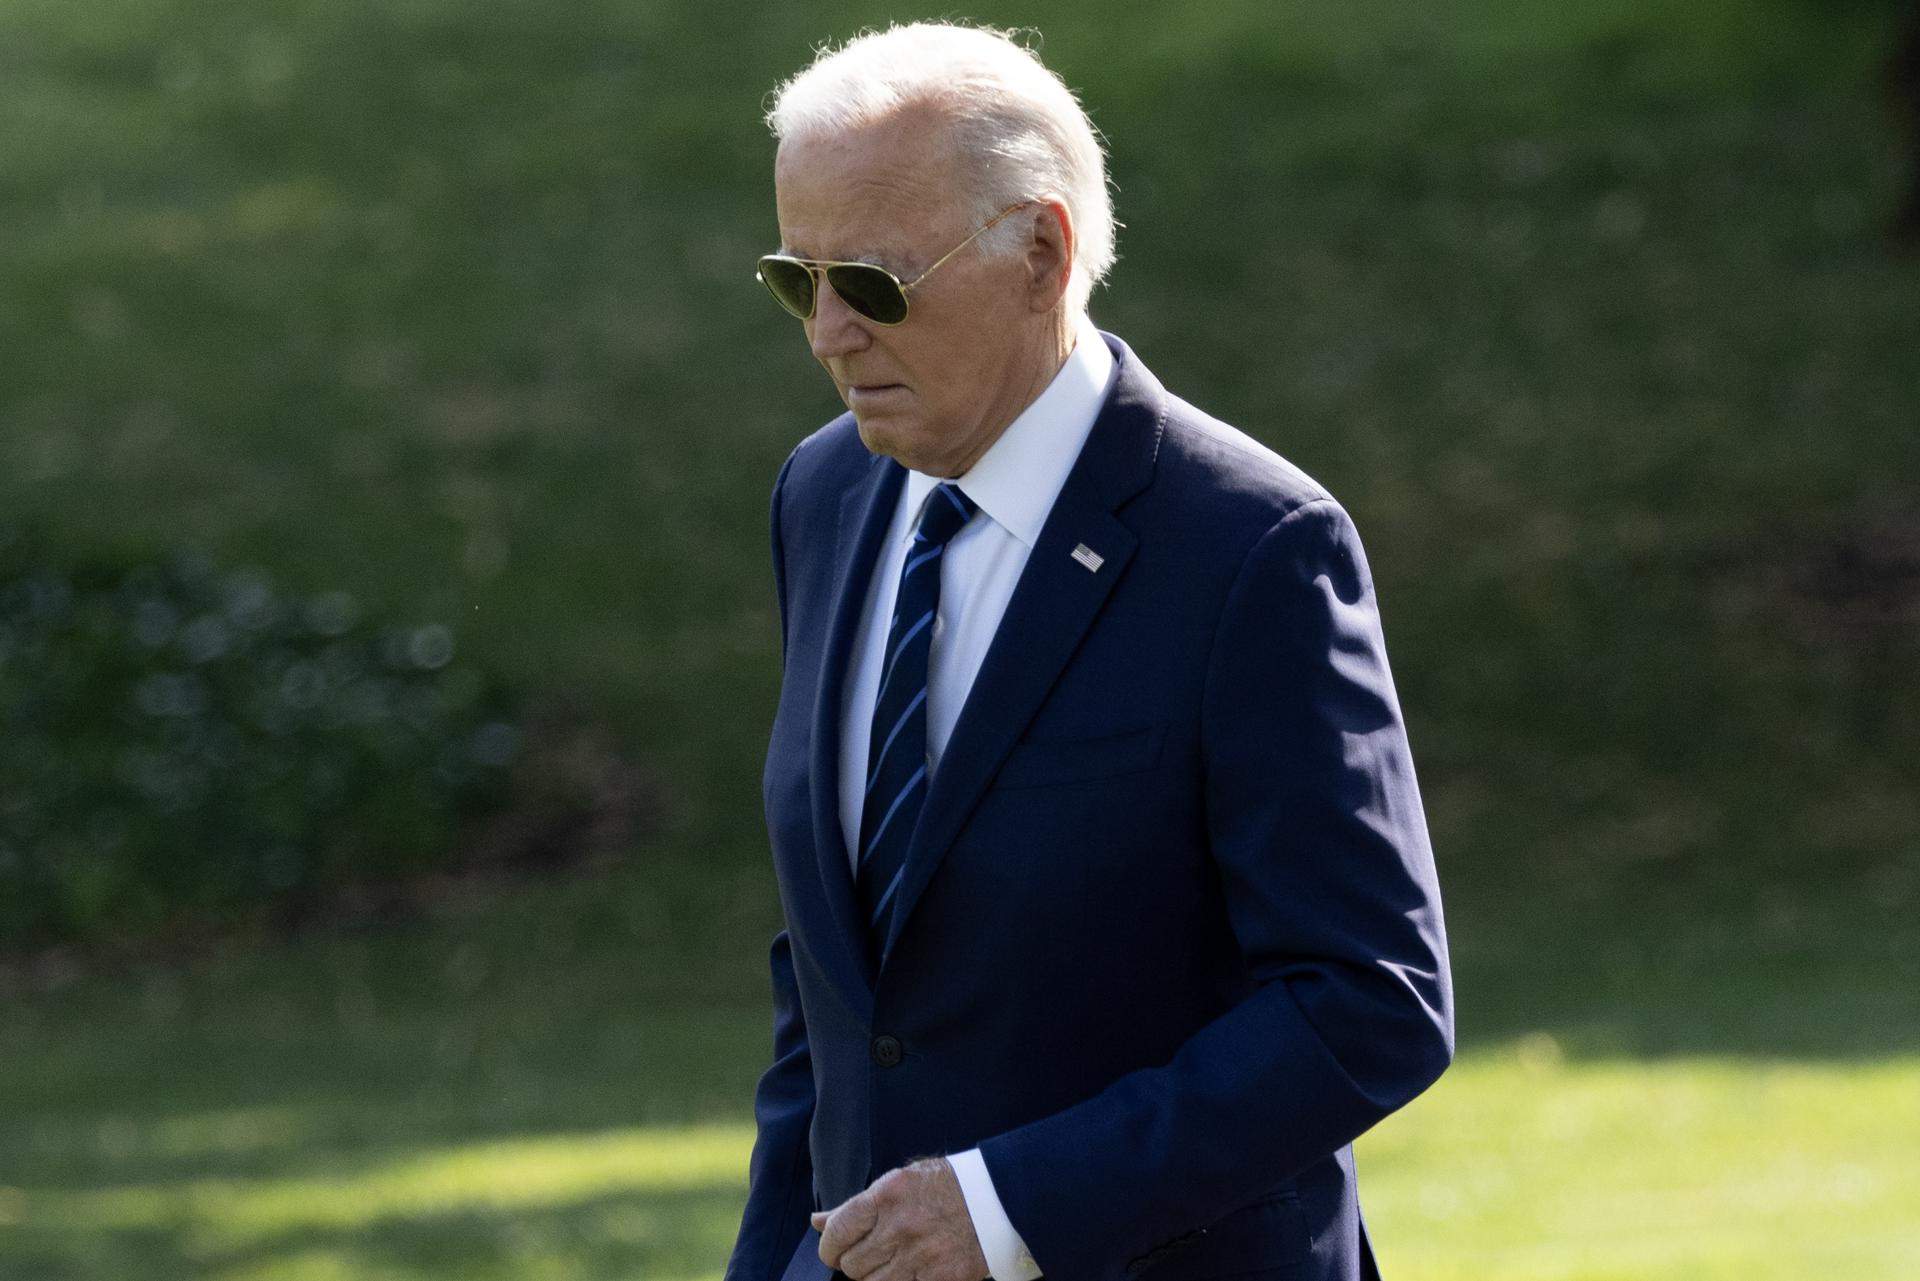 Nuevo tropiezo en la campaña de Biden: da positivo en covid-19 y se recluye en casa